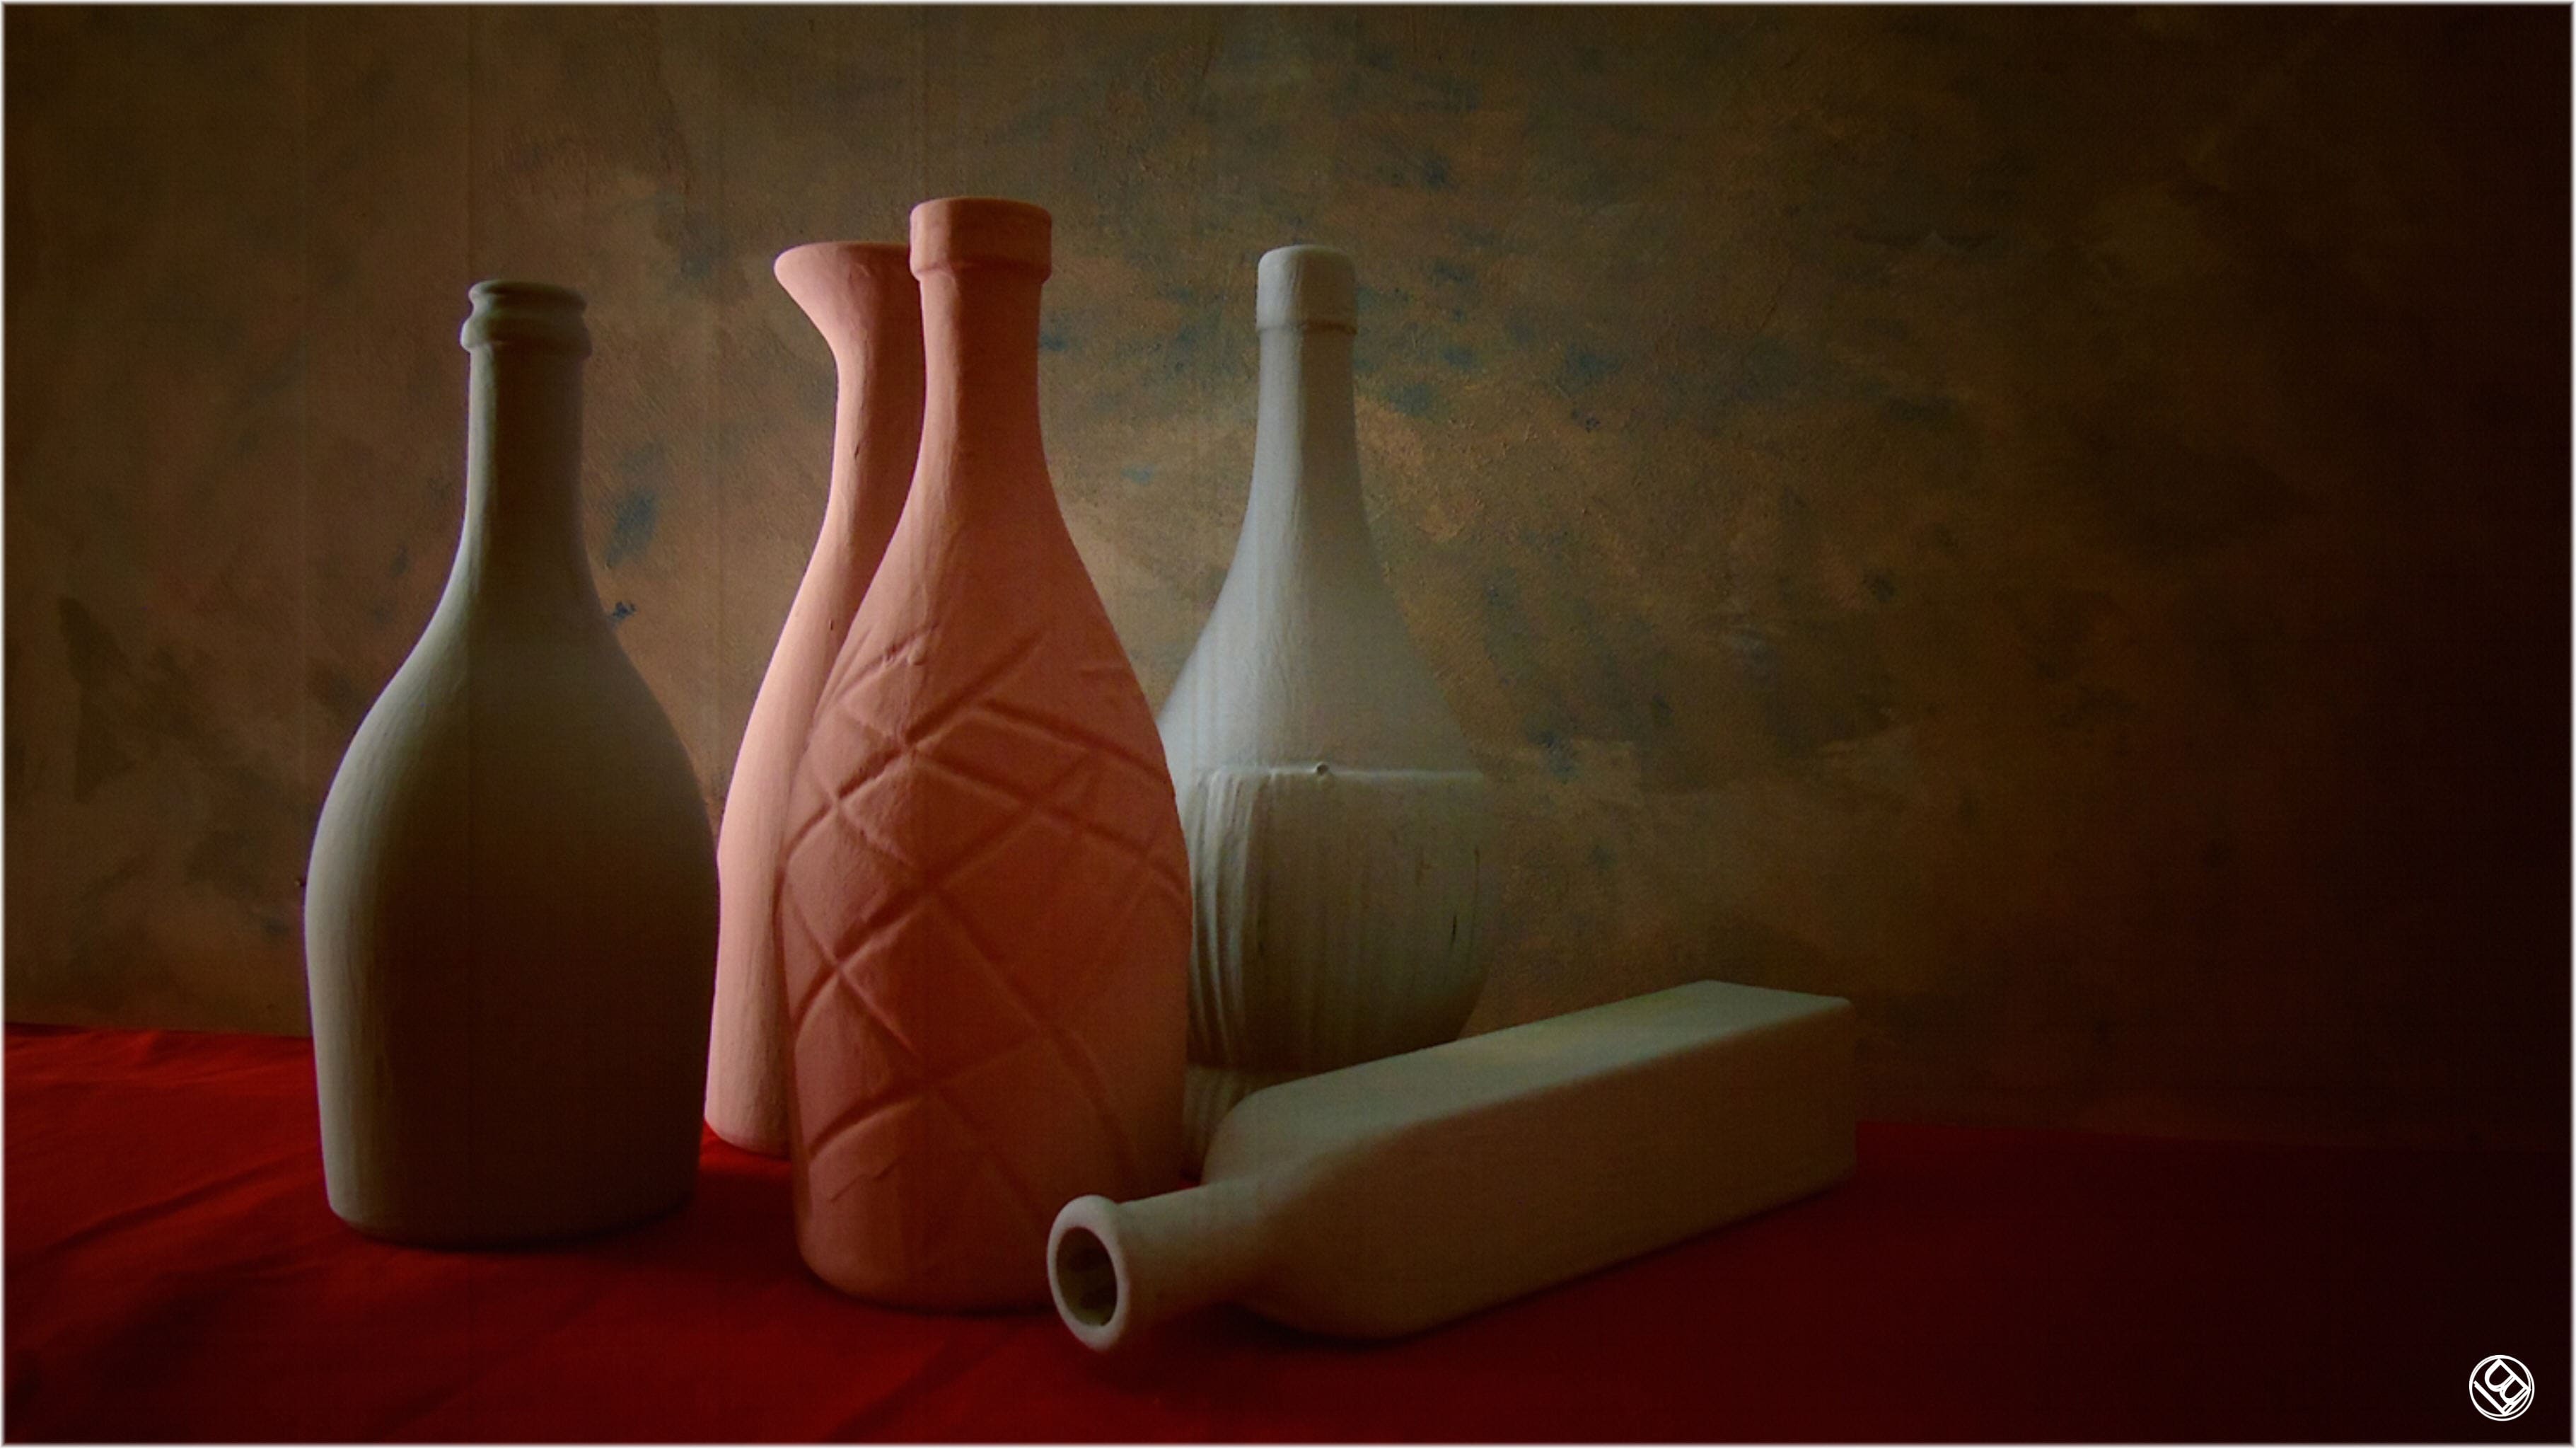 Le mie bottiglie in omaggio a Giorgio Morandi - 4